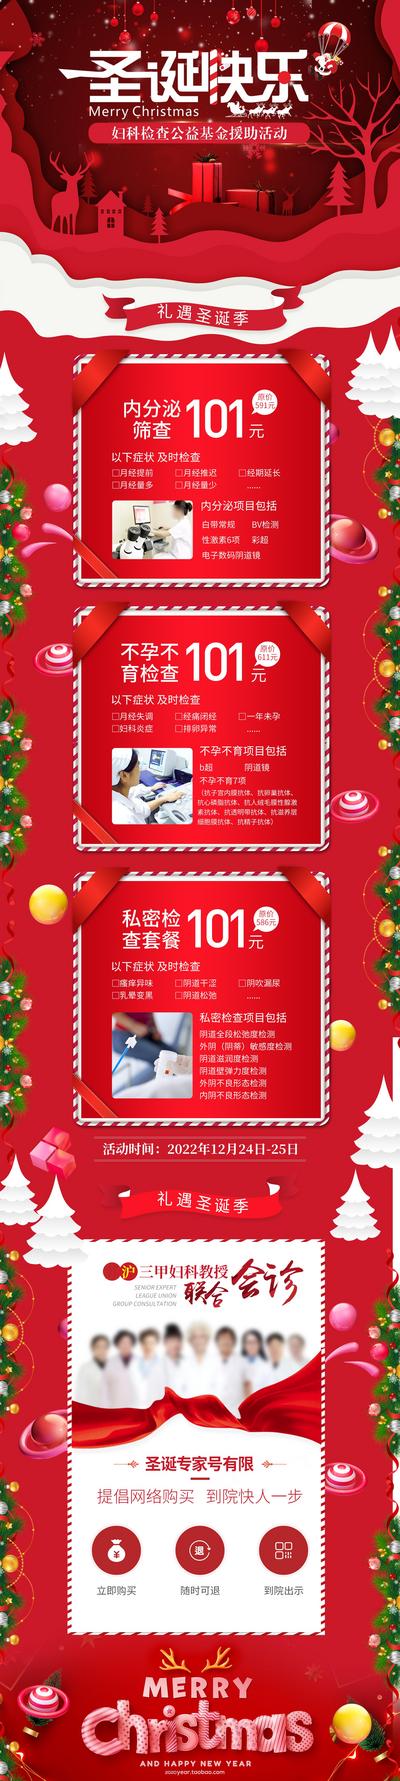 南门网 广告 海报节日 圣诞 专题 男科 女性 健康 私密 三甲